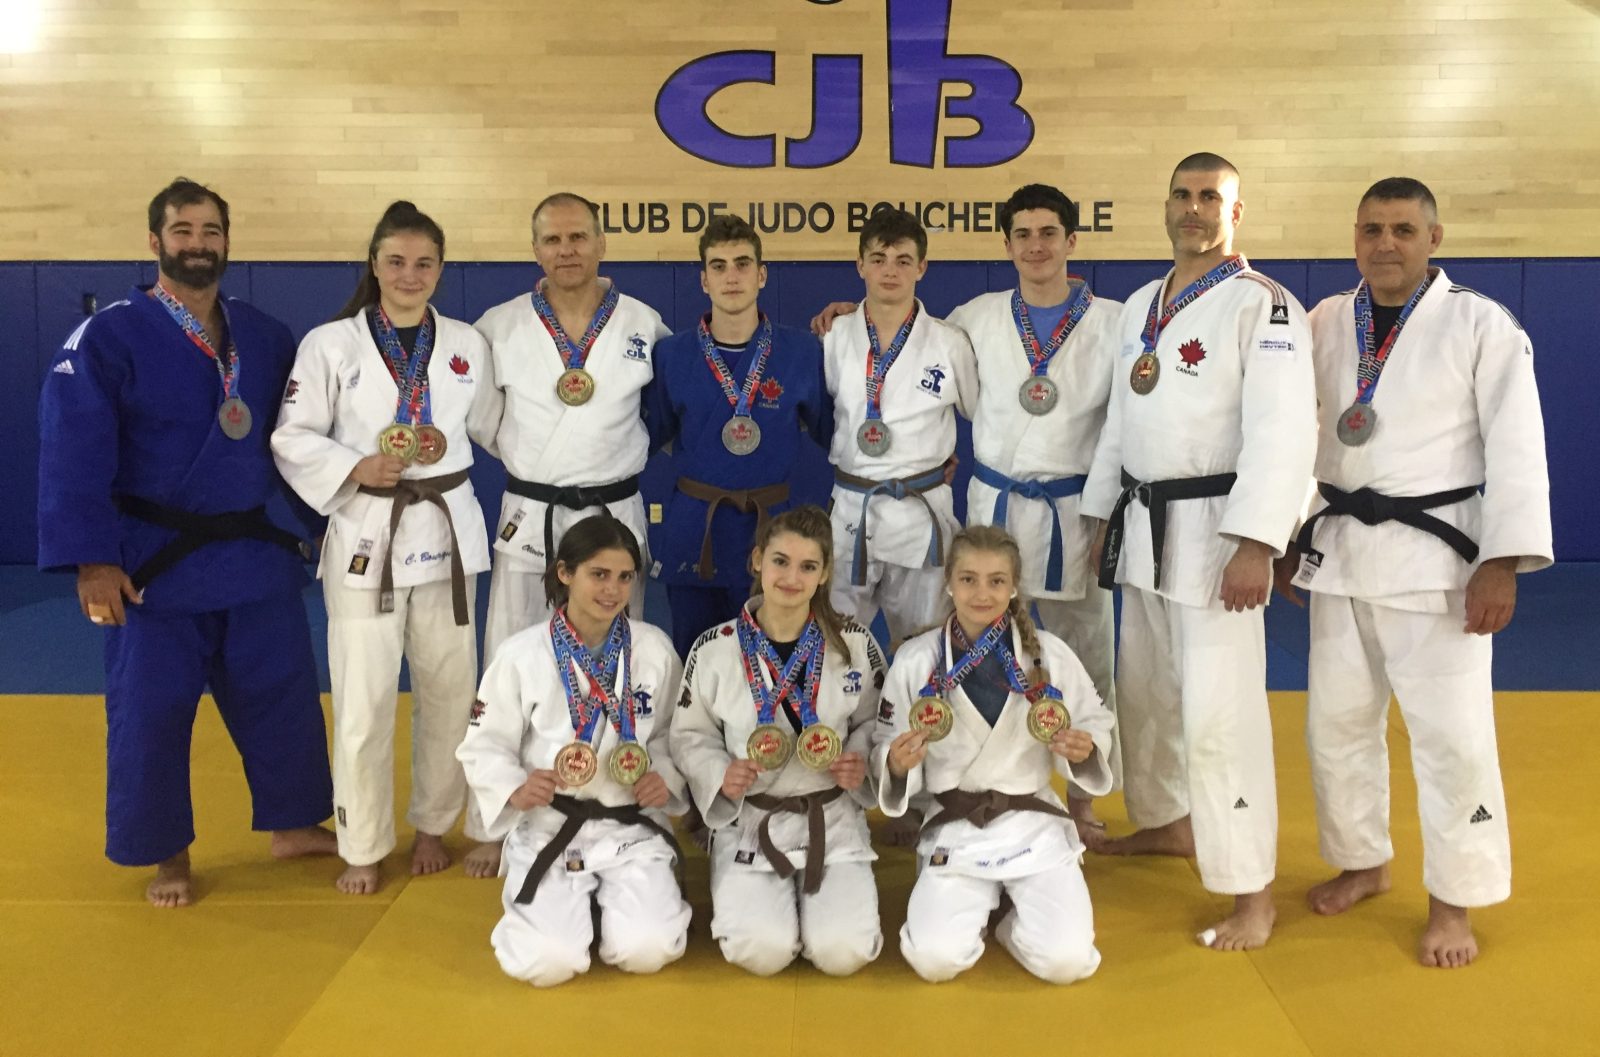 Championnats canadiens : 16 médailles pour les judokas du Club de judo de Boucherville